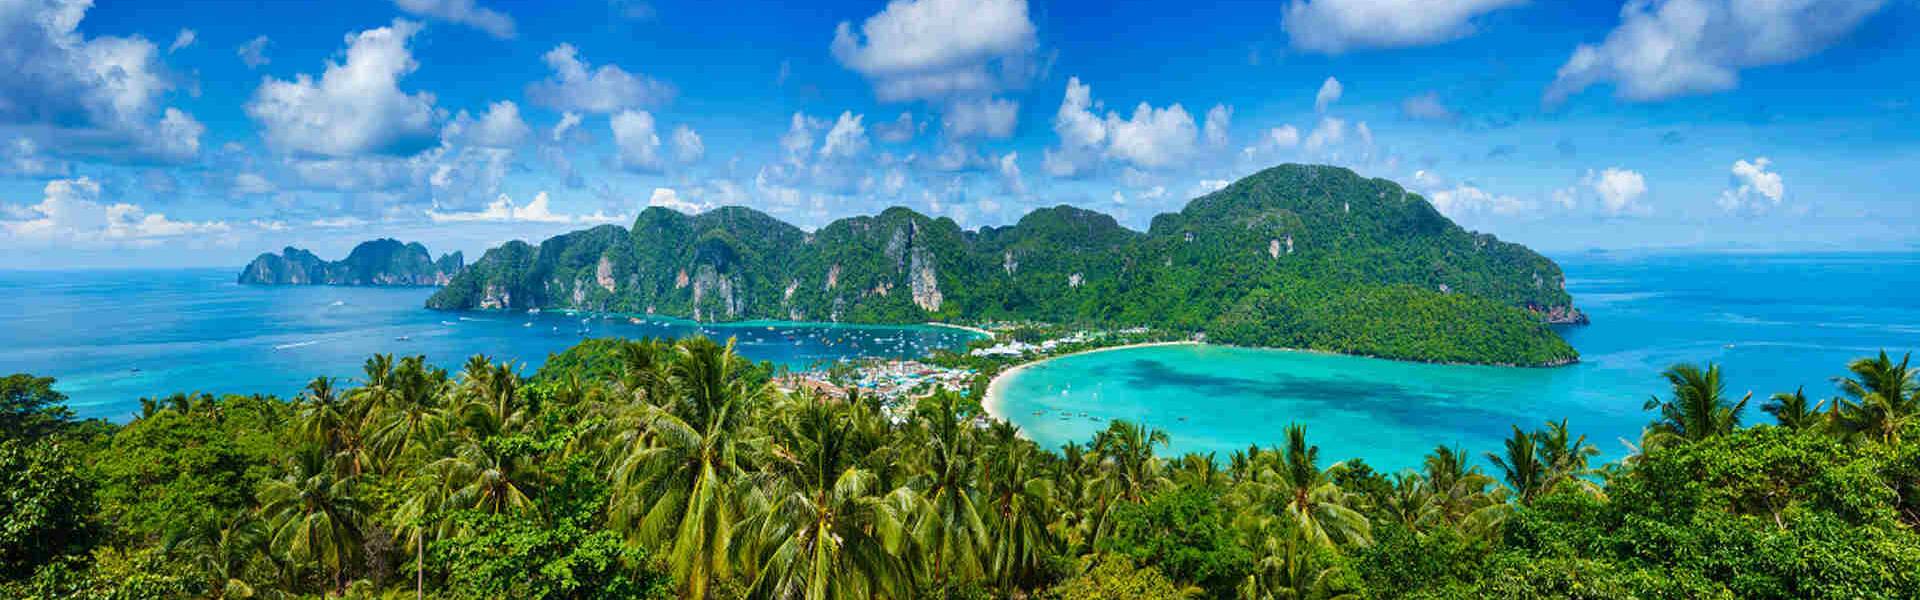 Die Phi Phi Inseln sind ein beliebtes Reiseziel in Thailand